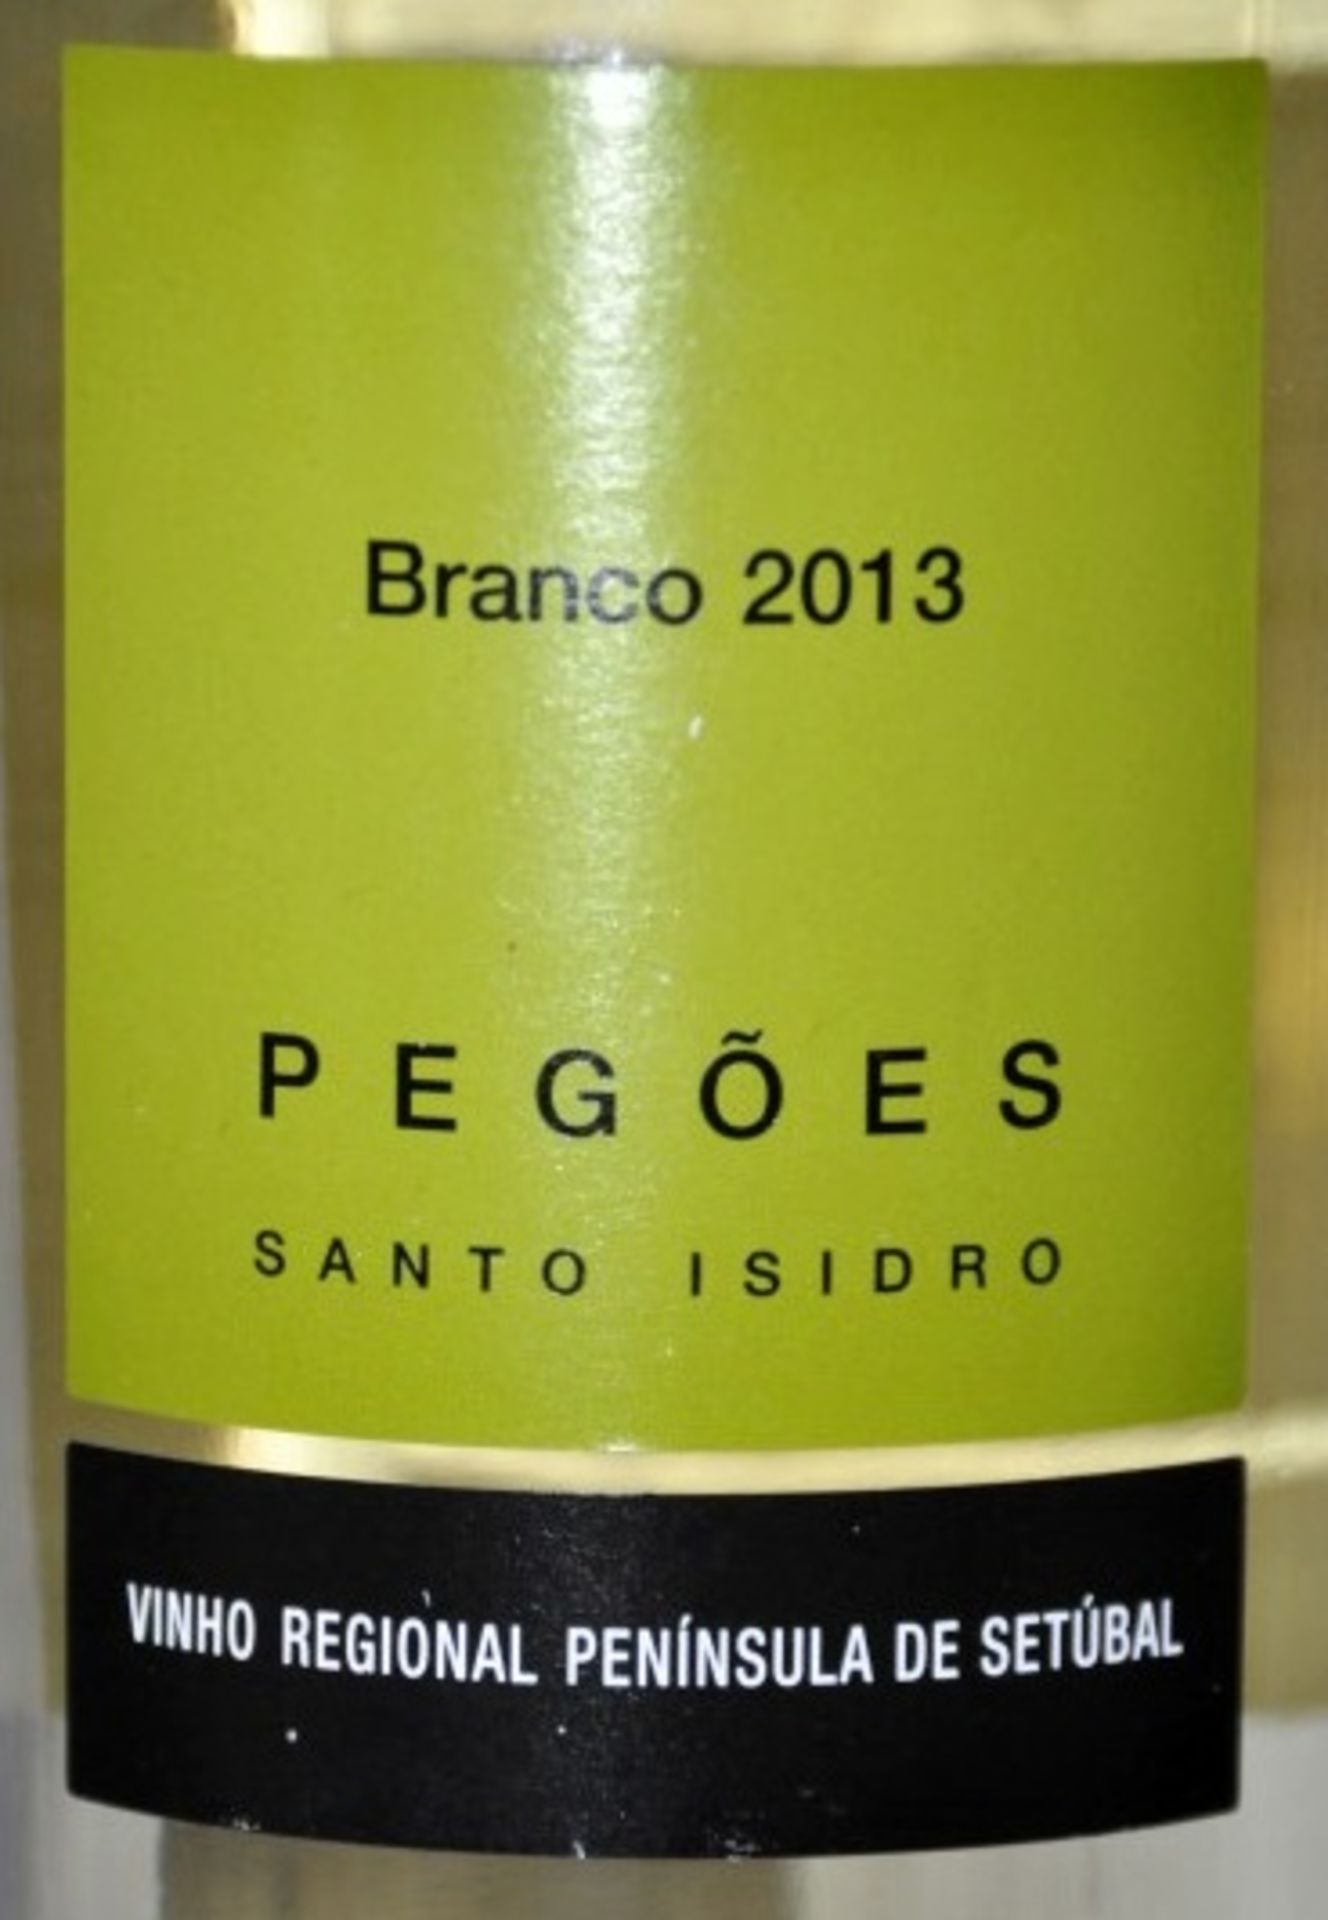 4 x Santo Isidro de Pegoes Fontanario de Pegoes Branco, Portugal – 2013 – Bottle Size 75cl - - Image 3 of 3